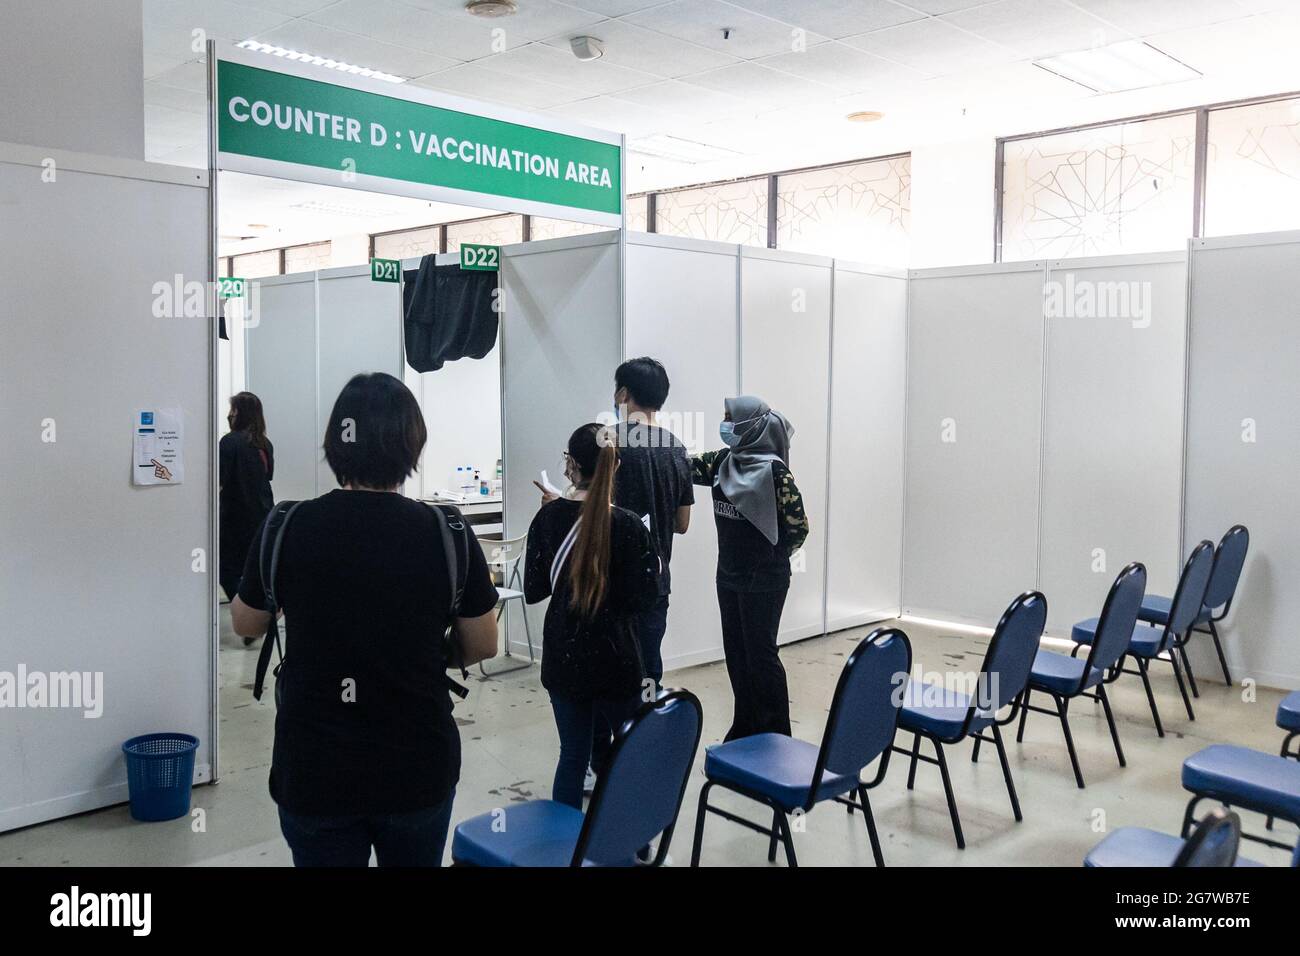 KUALA LUMPUR, MALASIA, 16 de julio de 2021: Personas que esperan su turno para entrar en la zona de vacunación de Covid-19 en el Programa Nacional de Vacunación de Malasia en Foto de stock